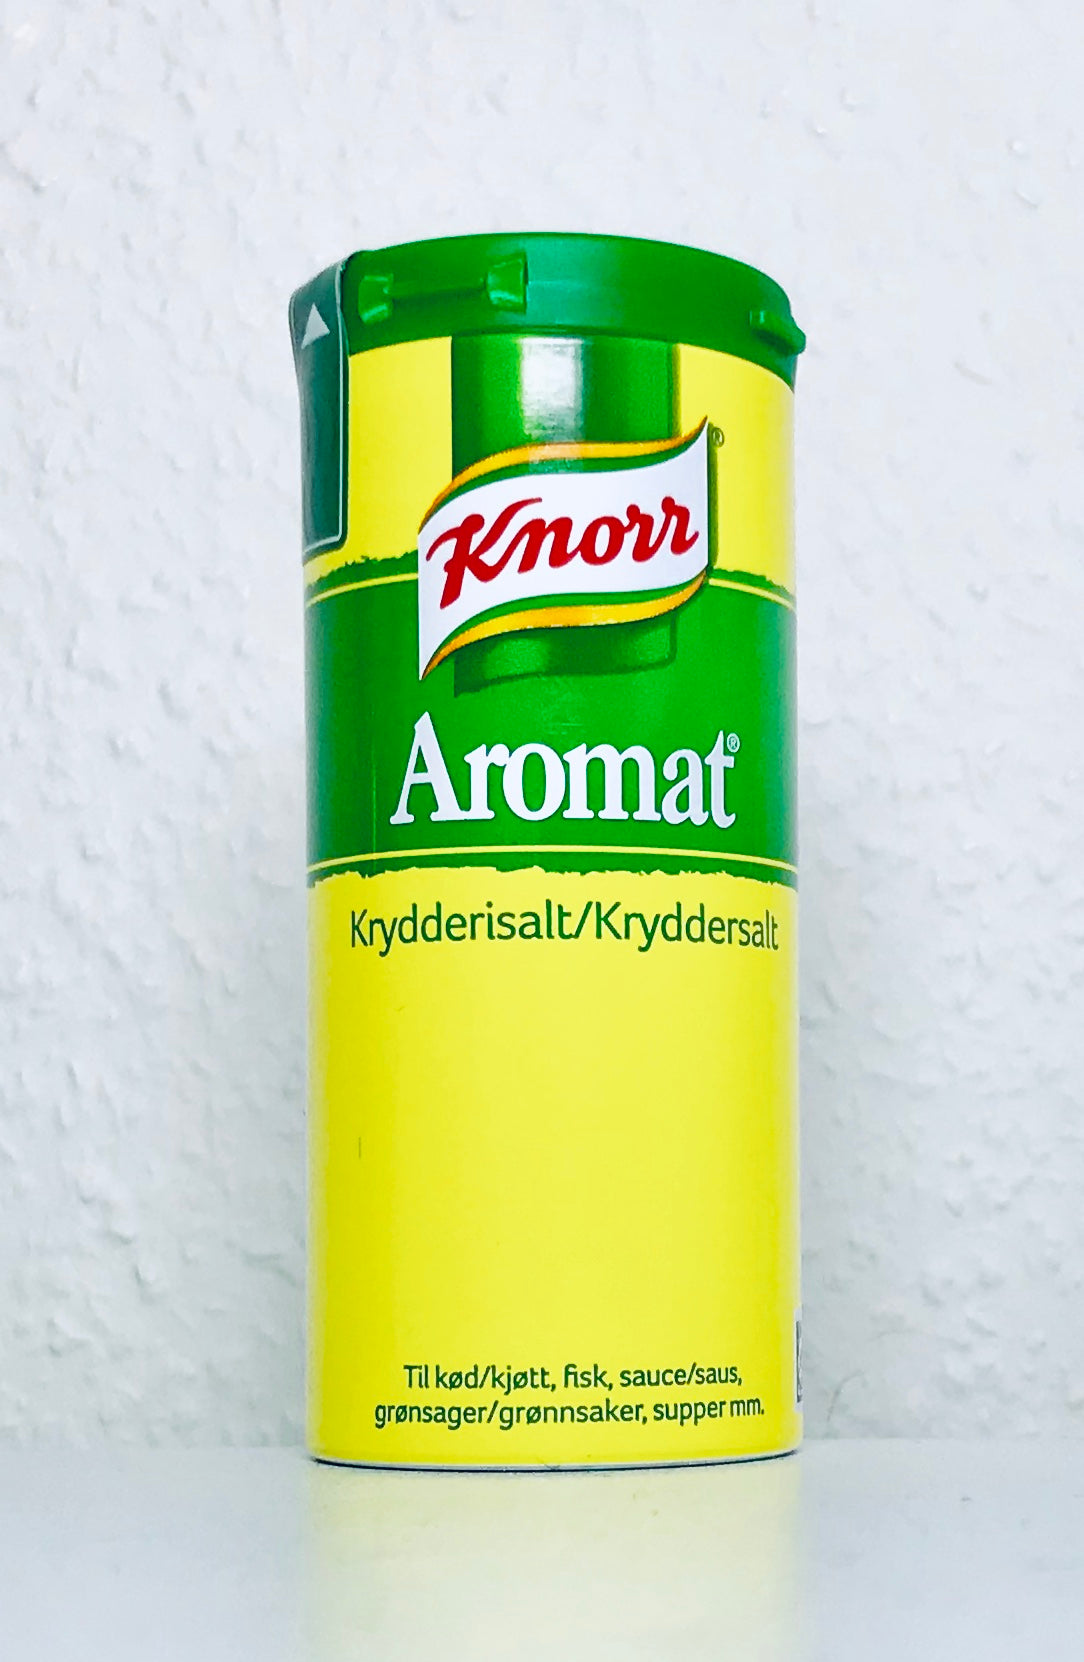 Knorr Aromat 90g – Afrimartuk